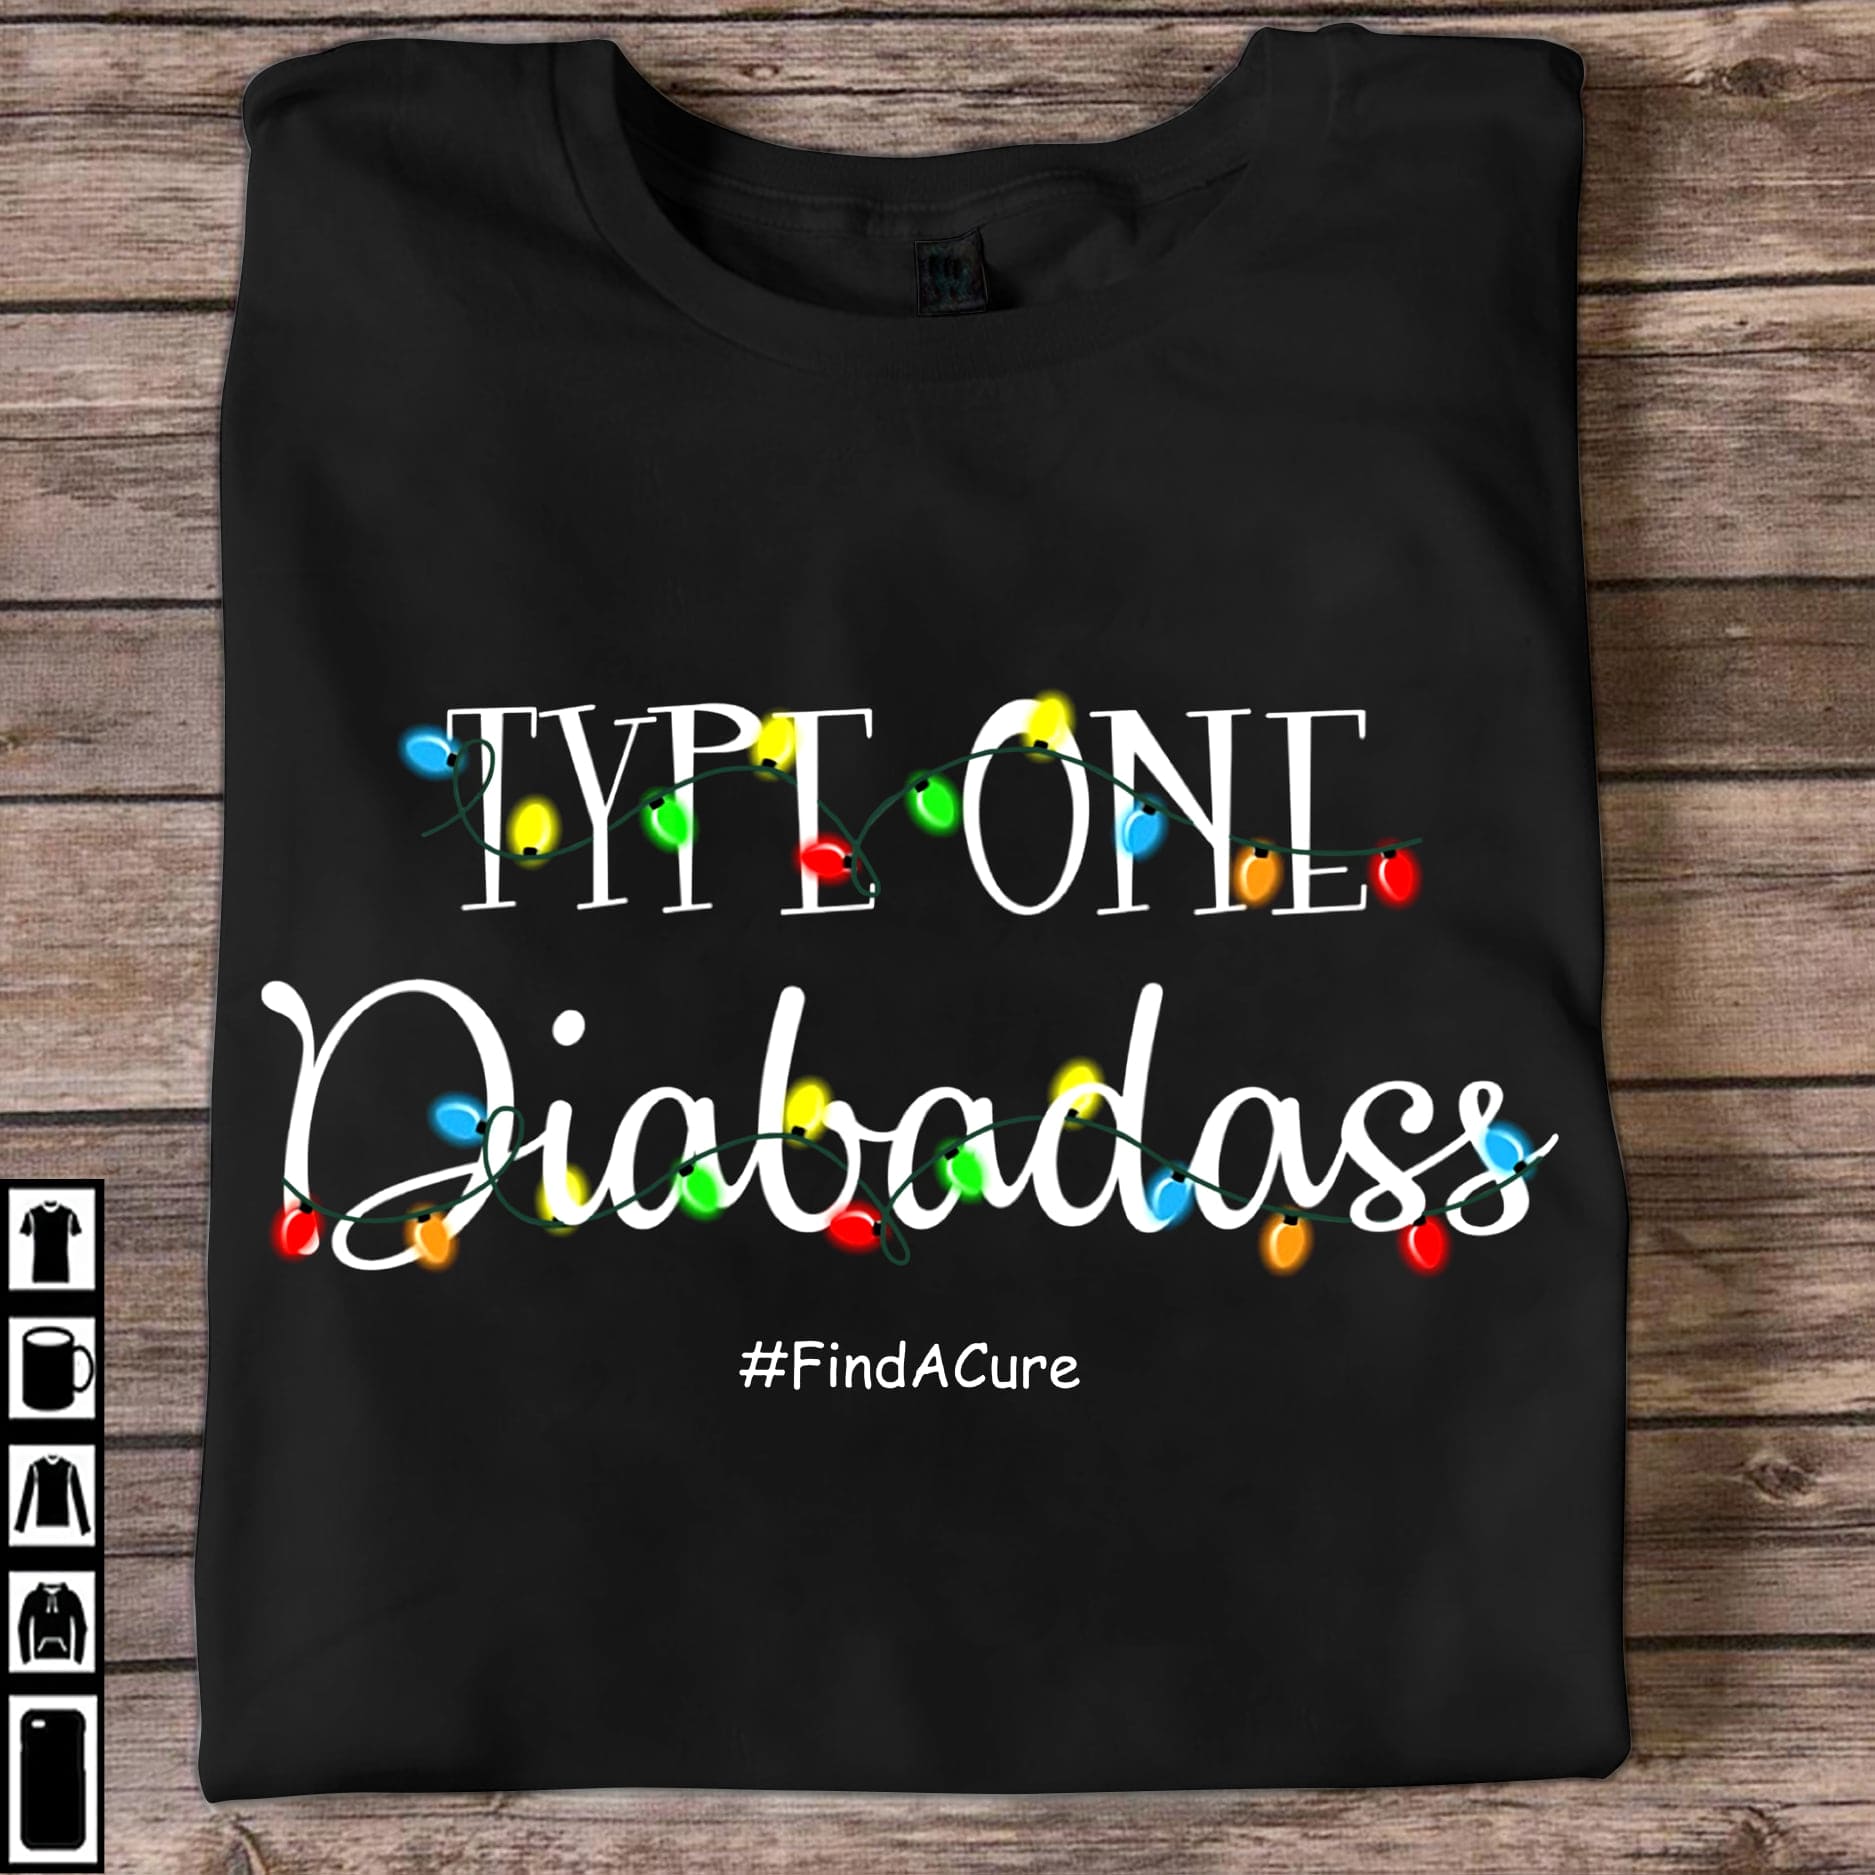 Type one diabadass - Find a cure, Diabetes awareness T-shirt